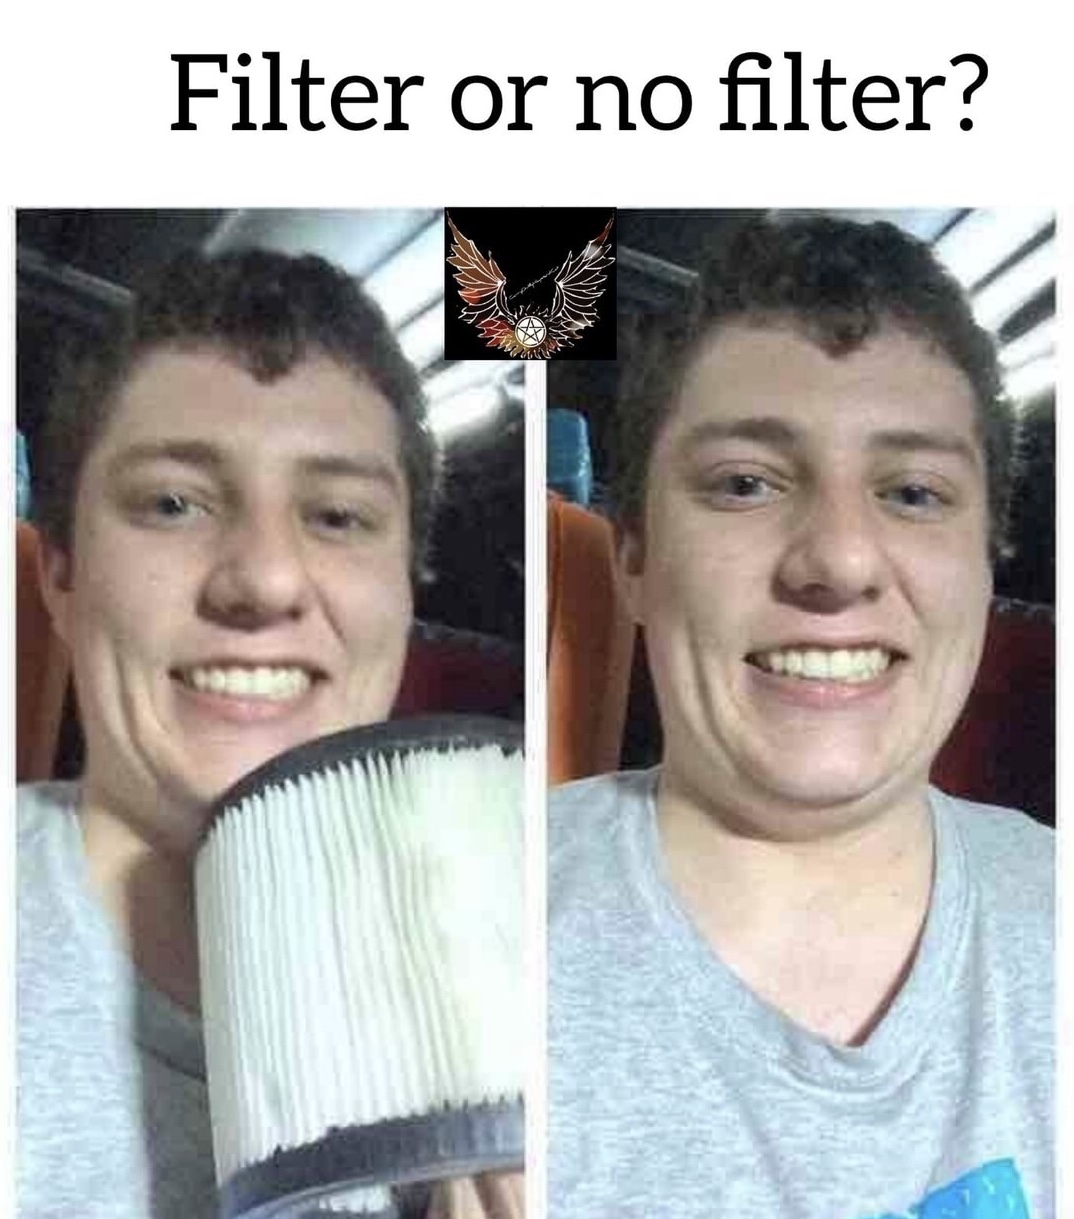 meme stream - filter vs no filter - Filter or no filter?